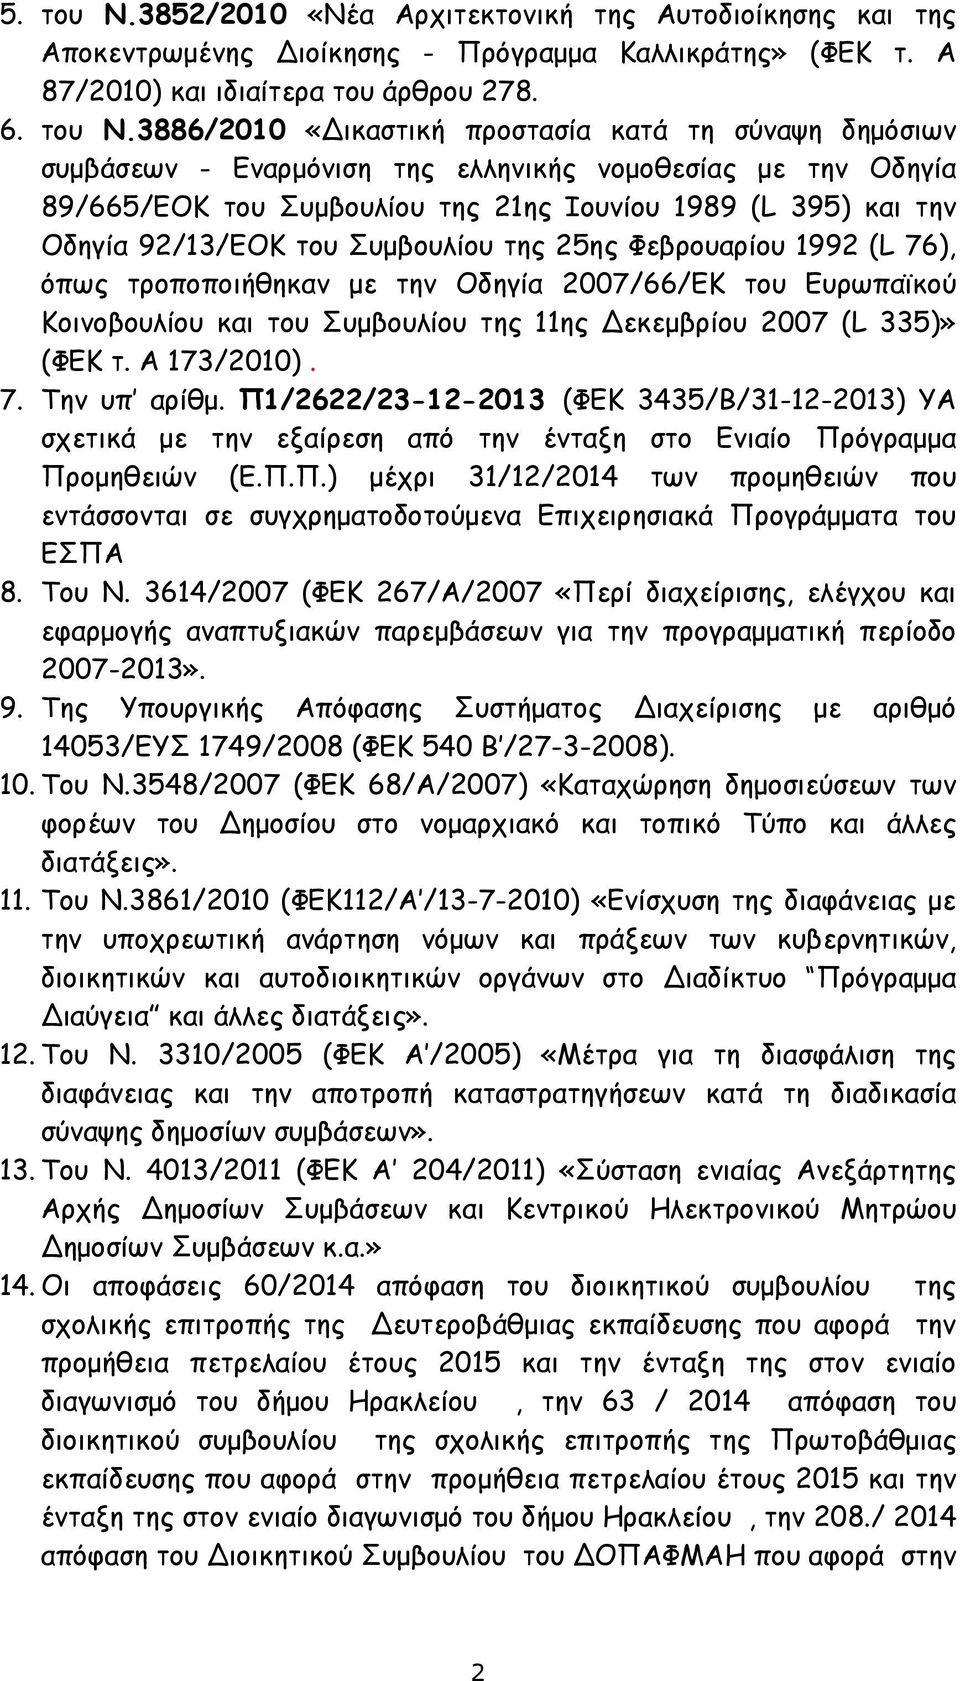 3886/2010 «Δικαστική προστασία κατά τη σύναψη δημόσιων συμβάσεων - Εναρμόνιση της ελληνικής νομοθεσίας με την Οδηγία 89/665/ΕΟΚ του Συμβουλίου της 21ης Ιουνίου 1989 (L 395) και την Οδηγία 92/13/ΕΟΚ